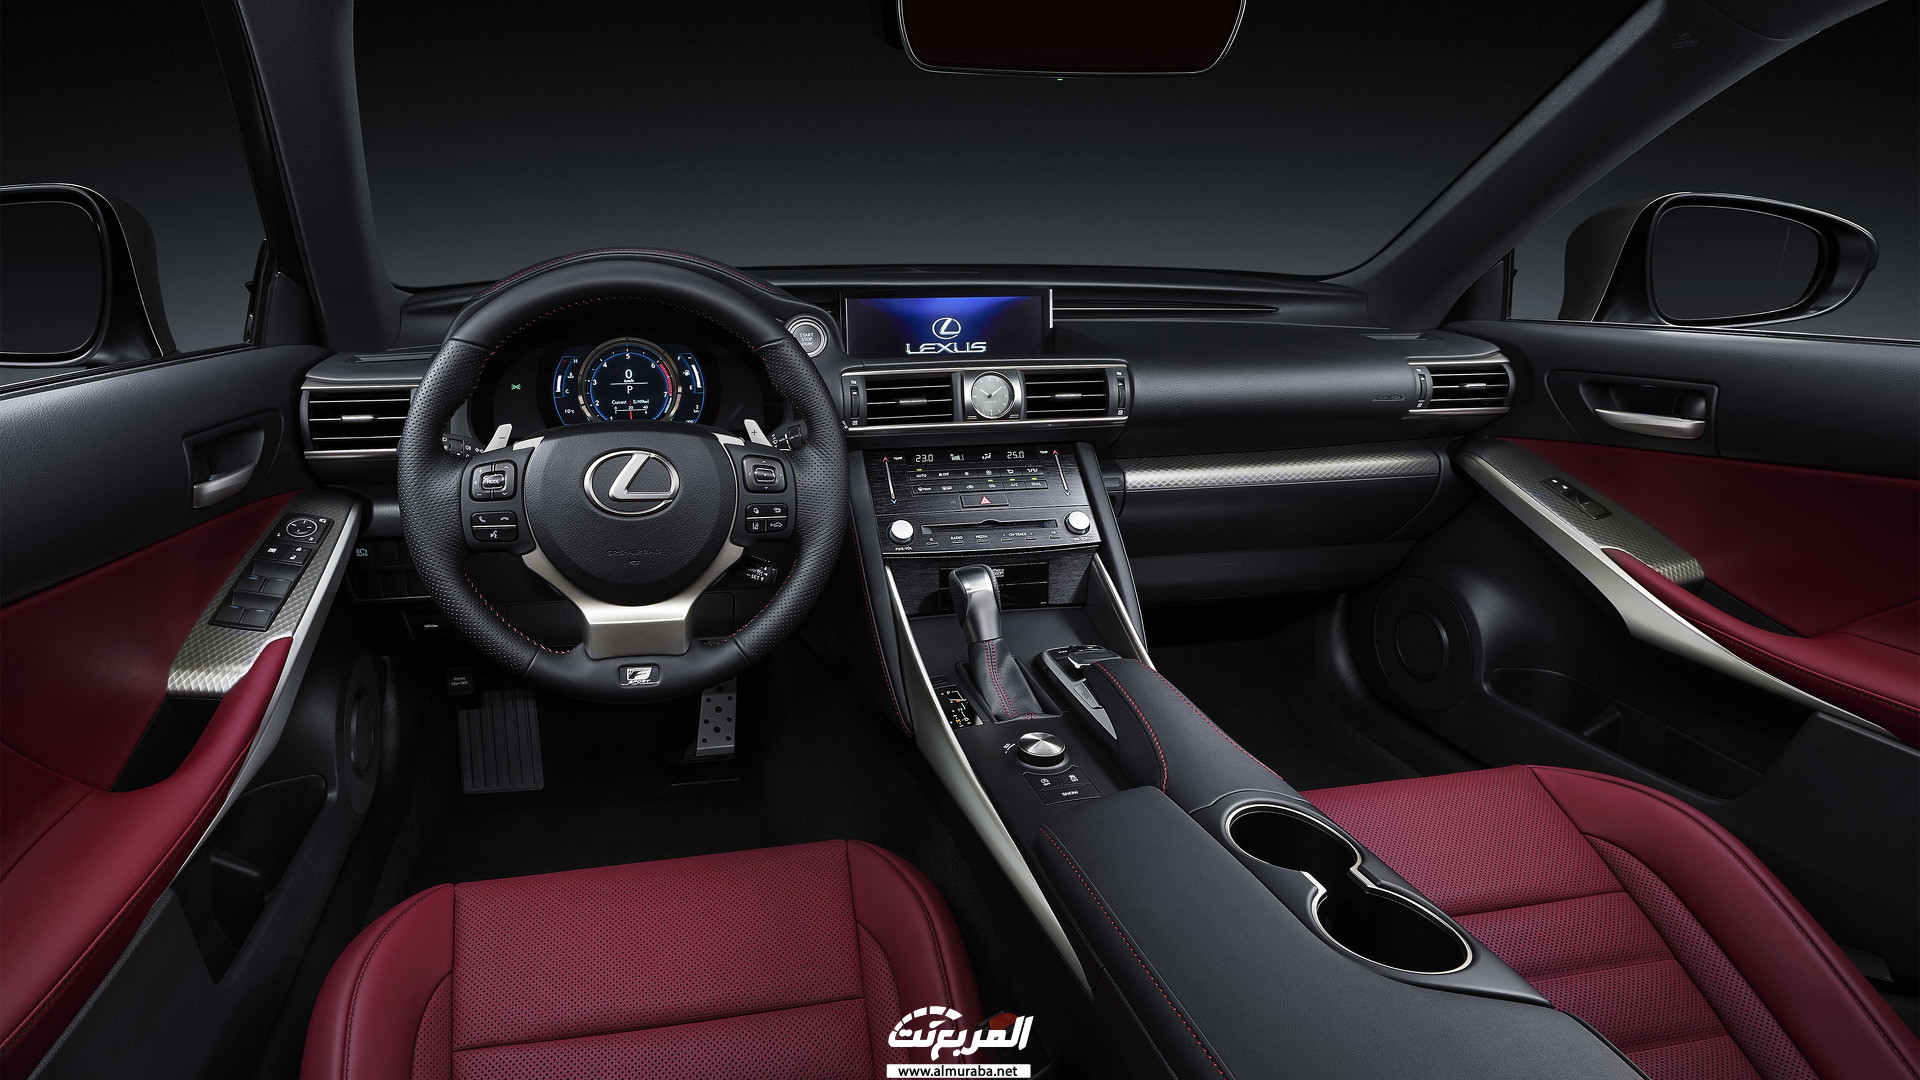 لكزس آي اس 2020 المعلومات والمواصفات والمميزات Lexus IS 2